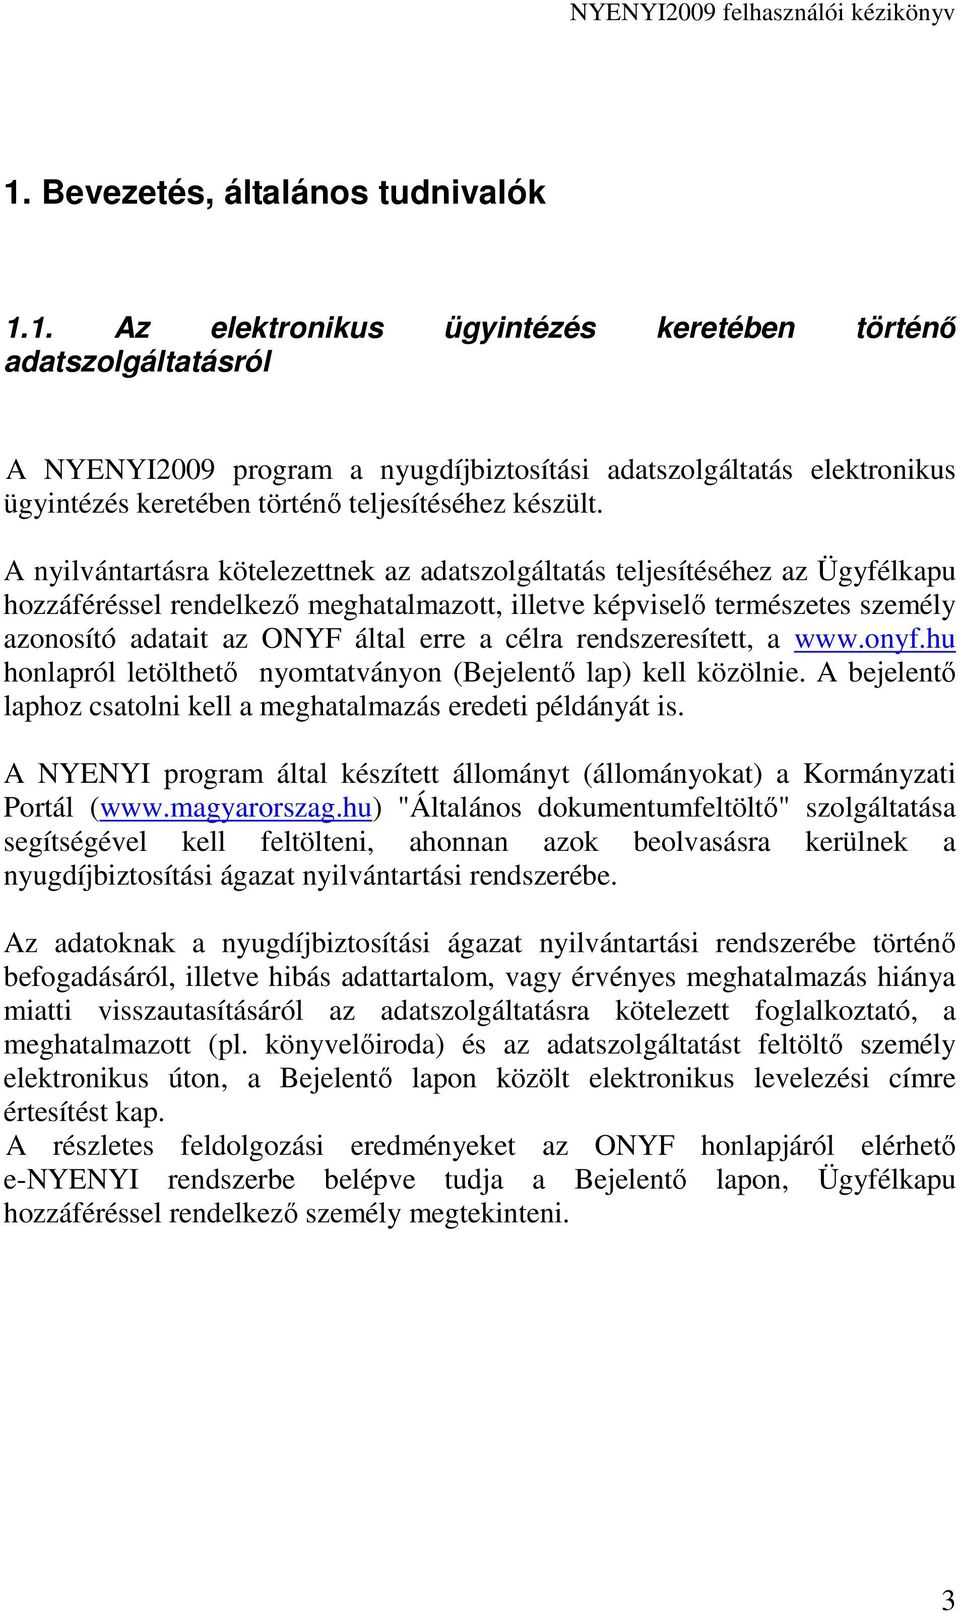 célra rendszeresített, a www.onyf.hu honlapról letölthetı nyomtatványon (Bejelentı lap) kell közölnie. A bejelentı laphoz csatolni kell a meghatalmazás eredeti példányát is.